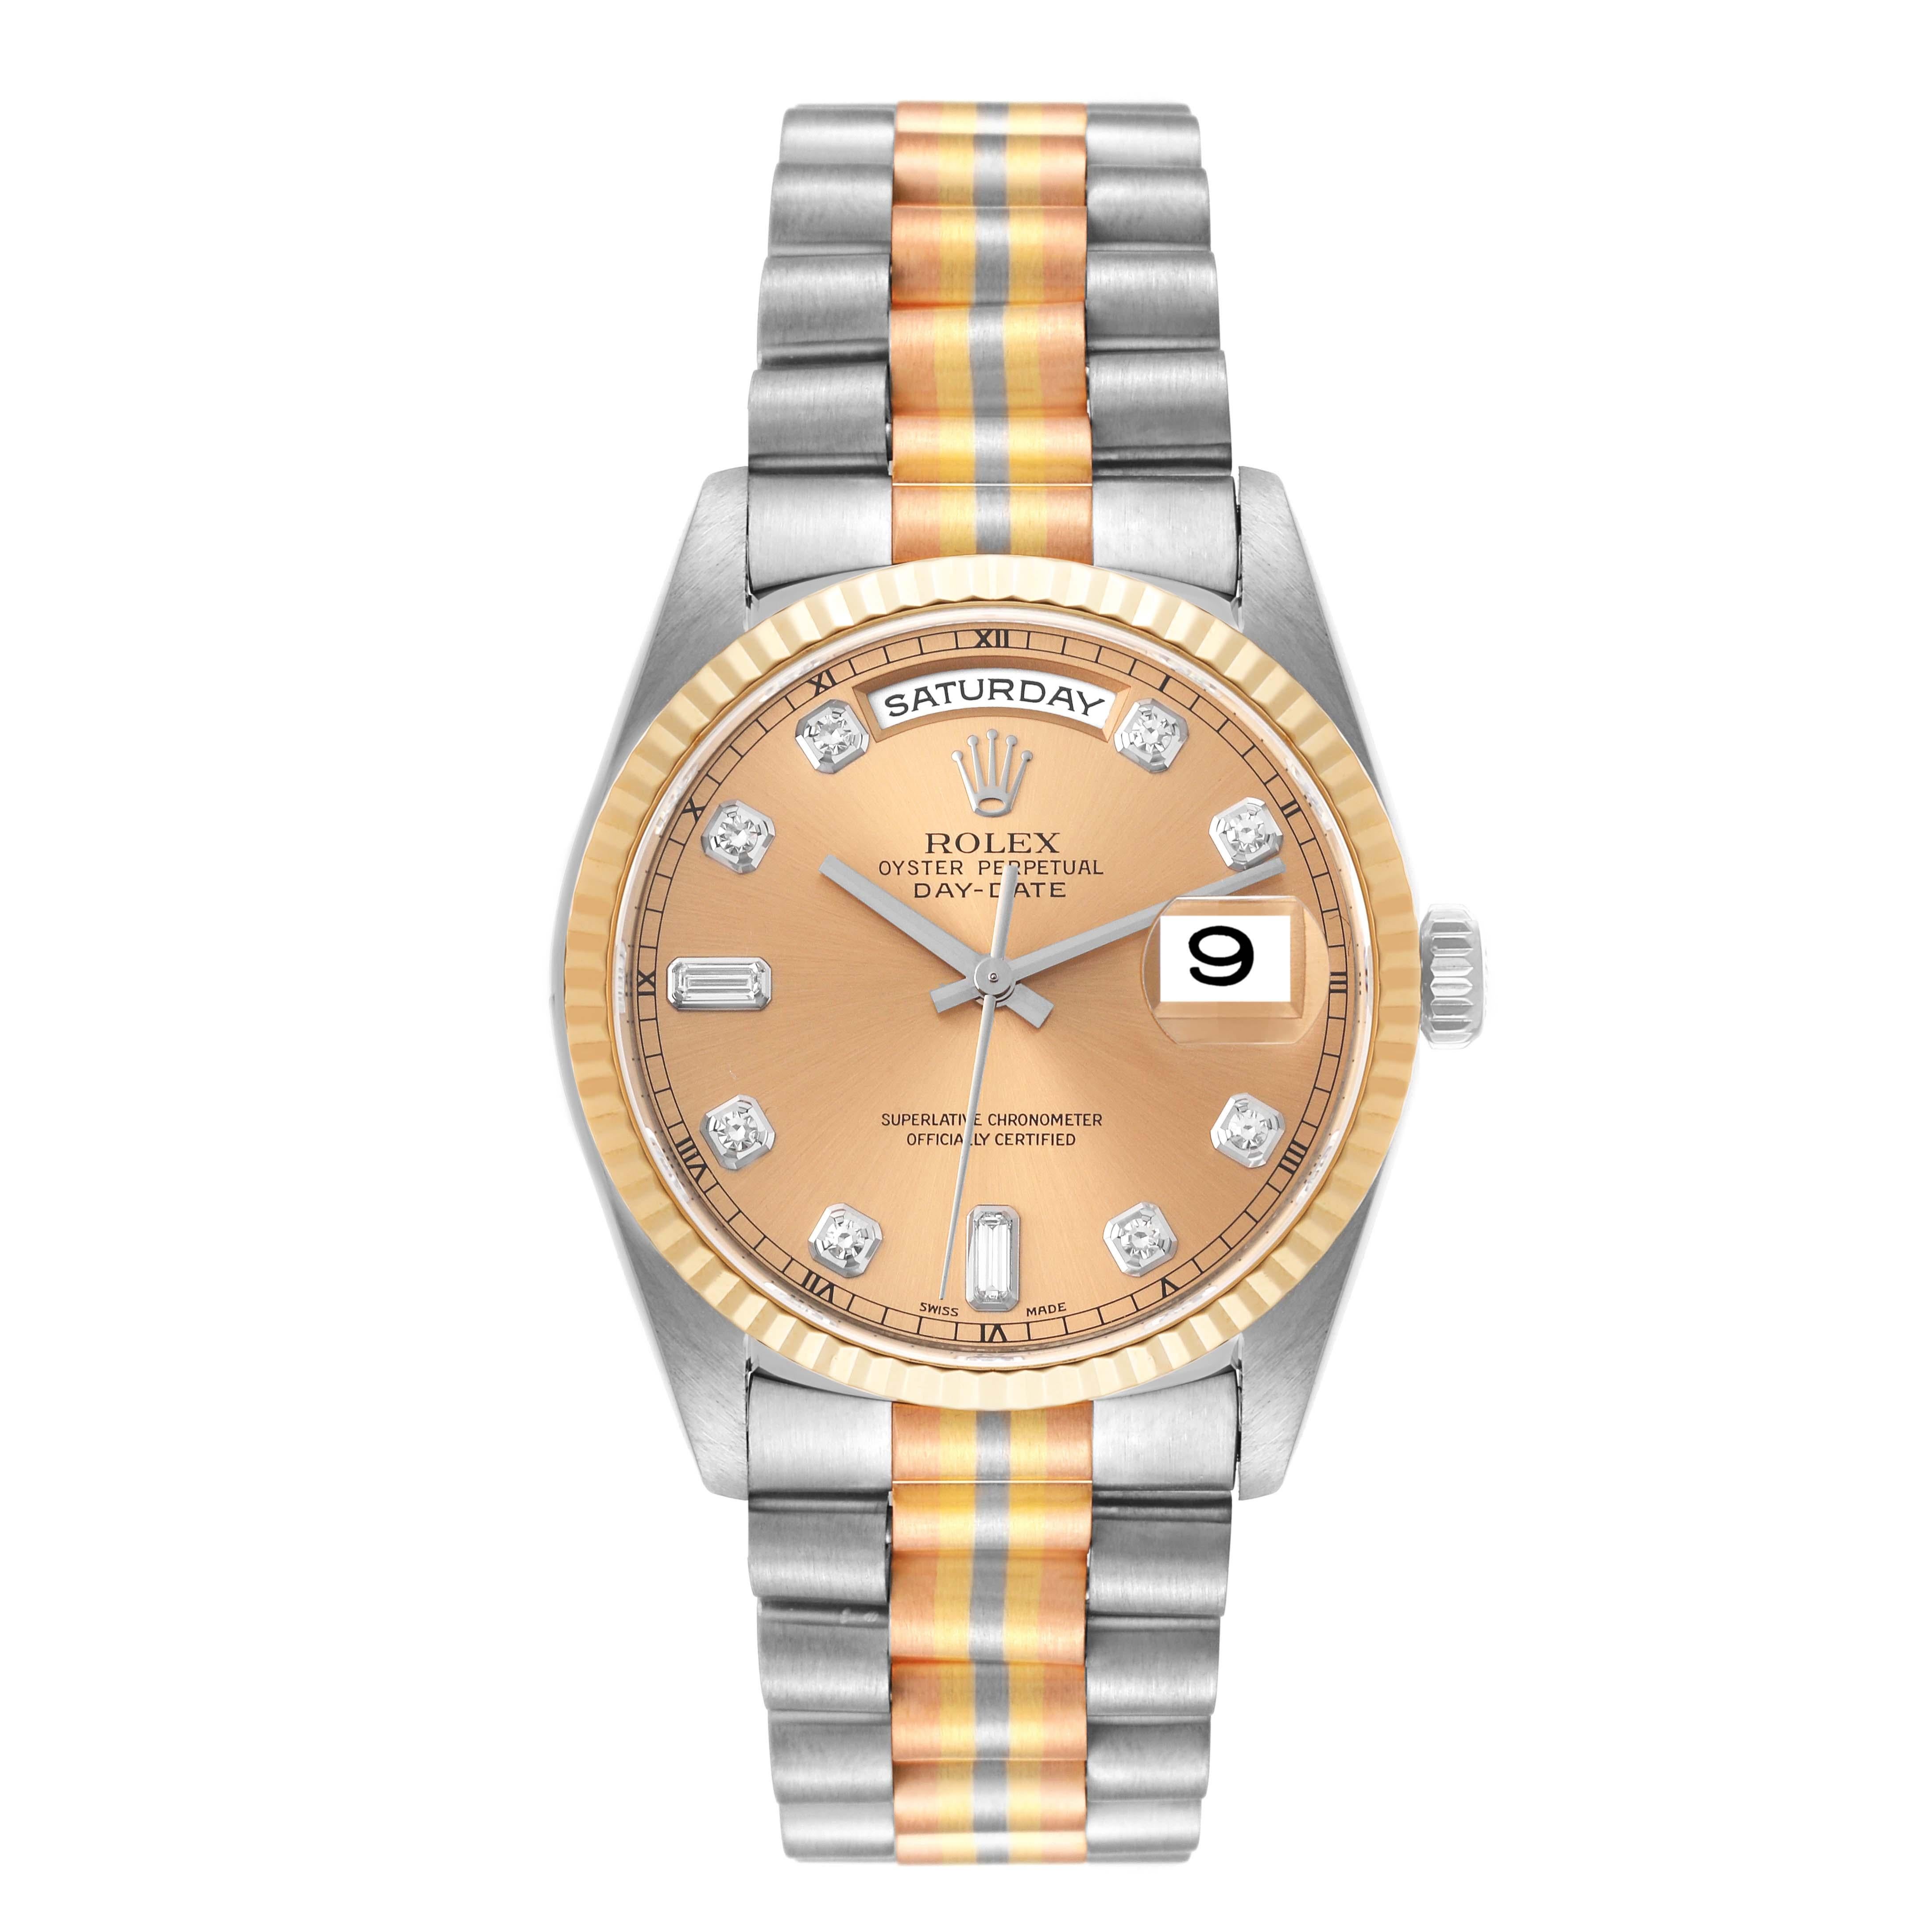 Rolex President Day-Date Tridor White Yellow Rose Gold Diamond Mens Watch 18239. Mouvement à remontage automatique, certifié officiellement chronomètre, avec fonction de date à réglage rapide. Boîtier oyster en or blanc 18k de 36,0 mm de diamètre.